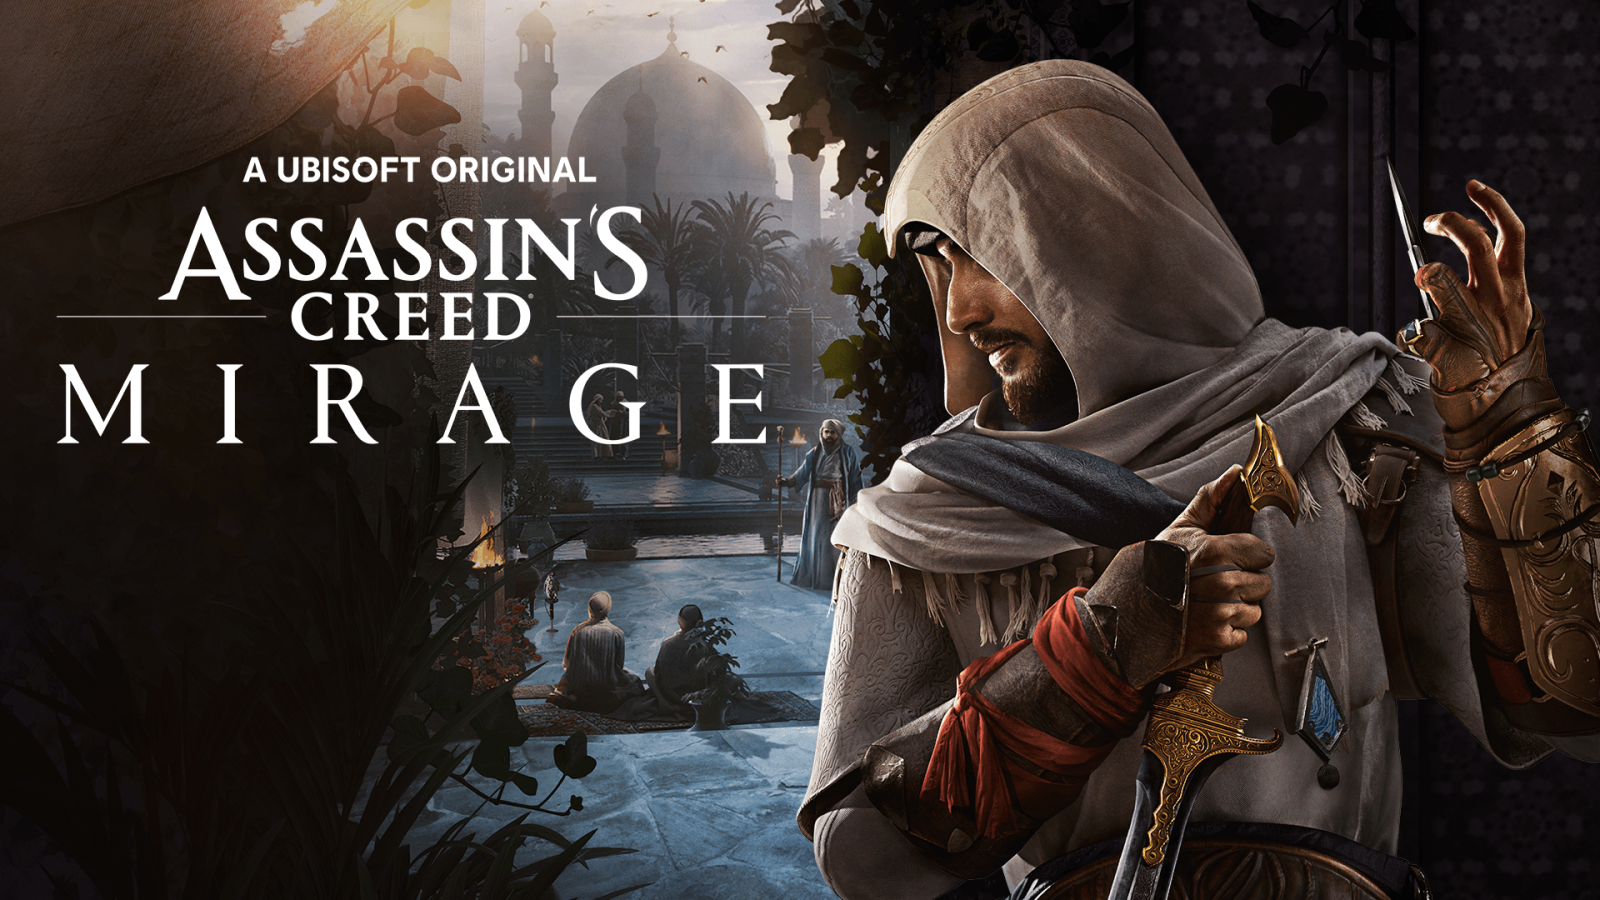 Ubisoft опублікувала новий скріншот з Assasin's Creed Mirage з Басімом 